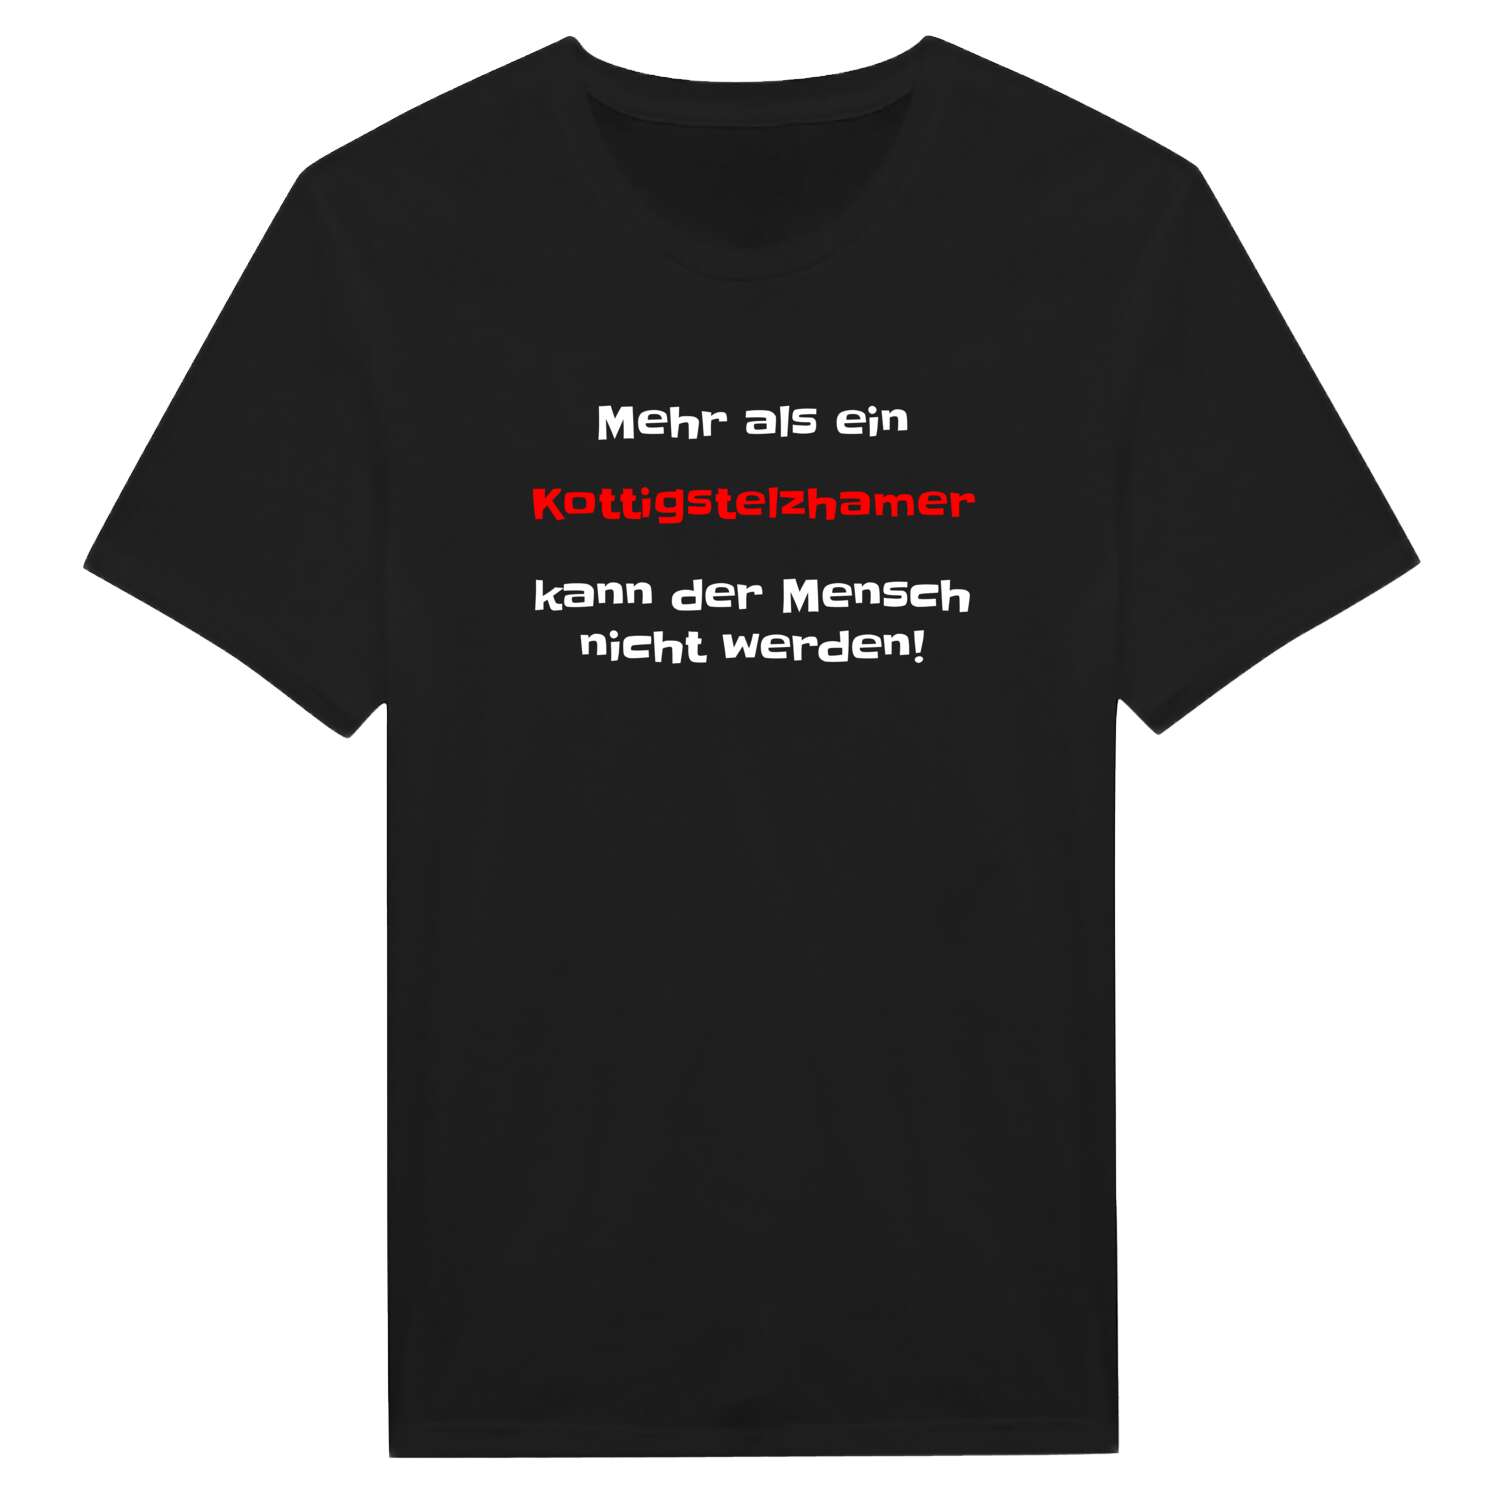 Kottigstelzham T-Shirt »Mehr als ein«